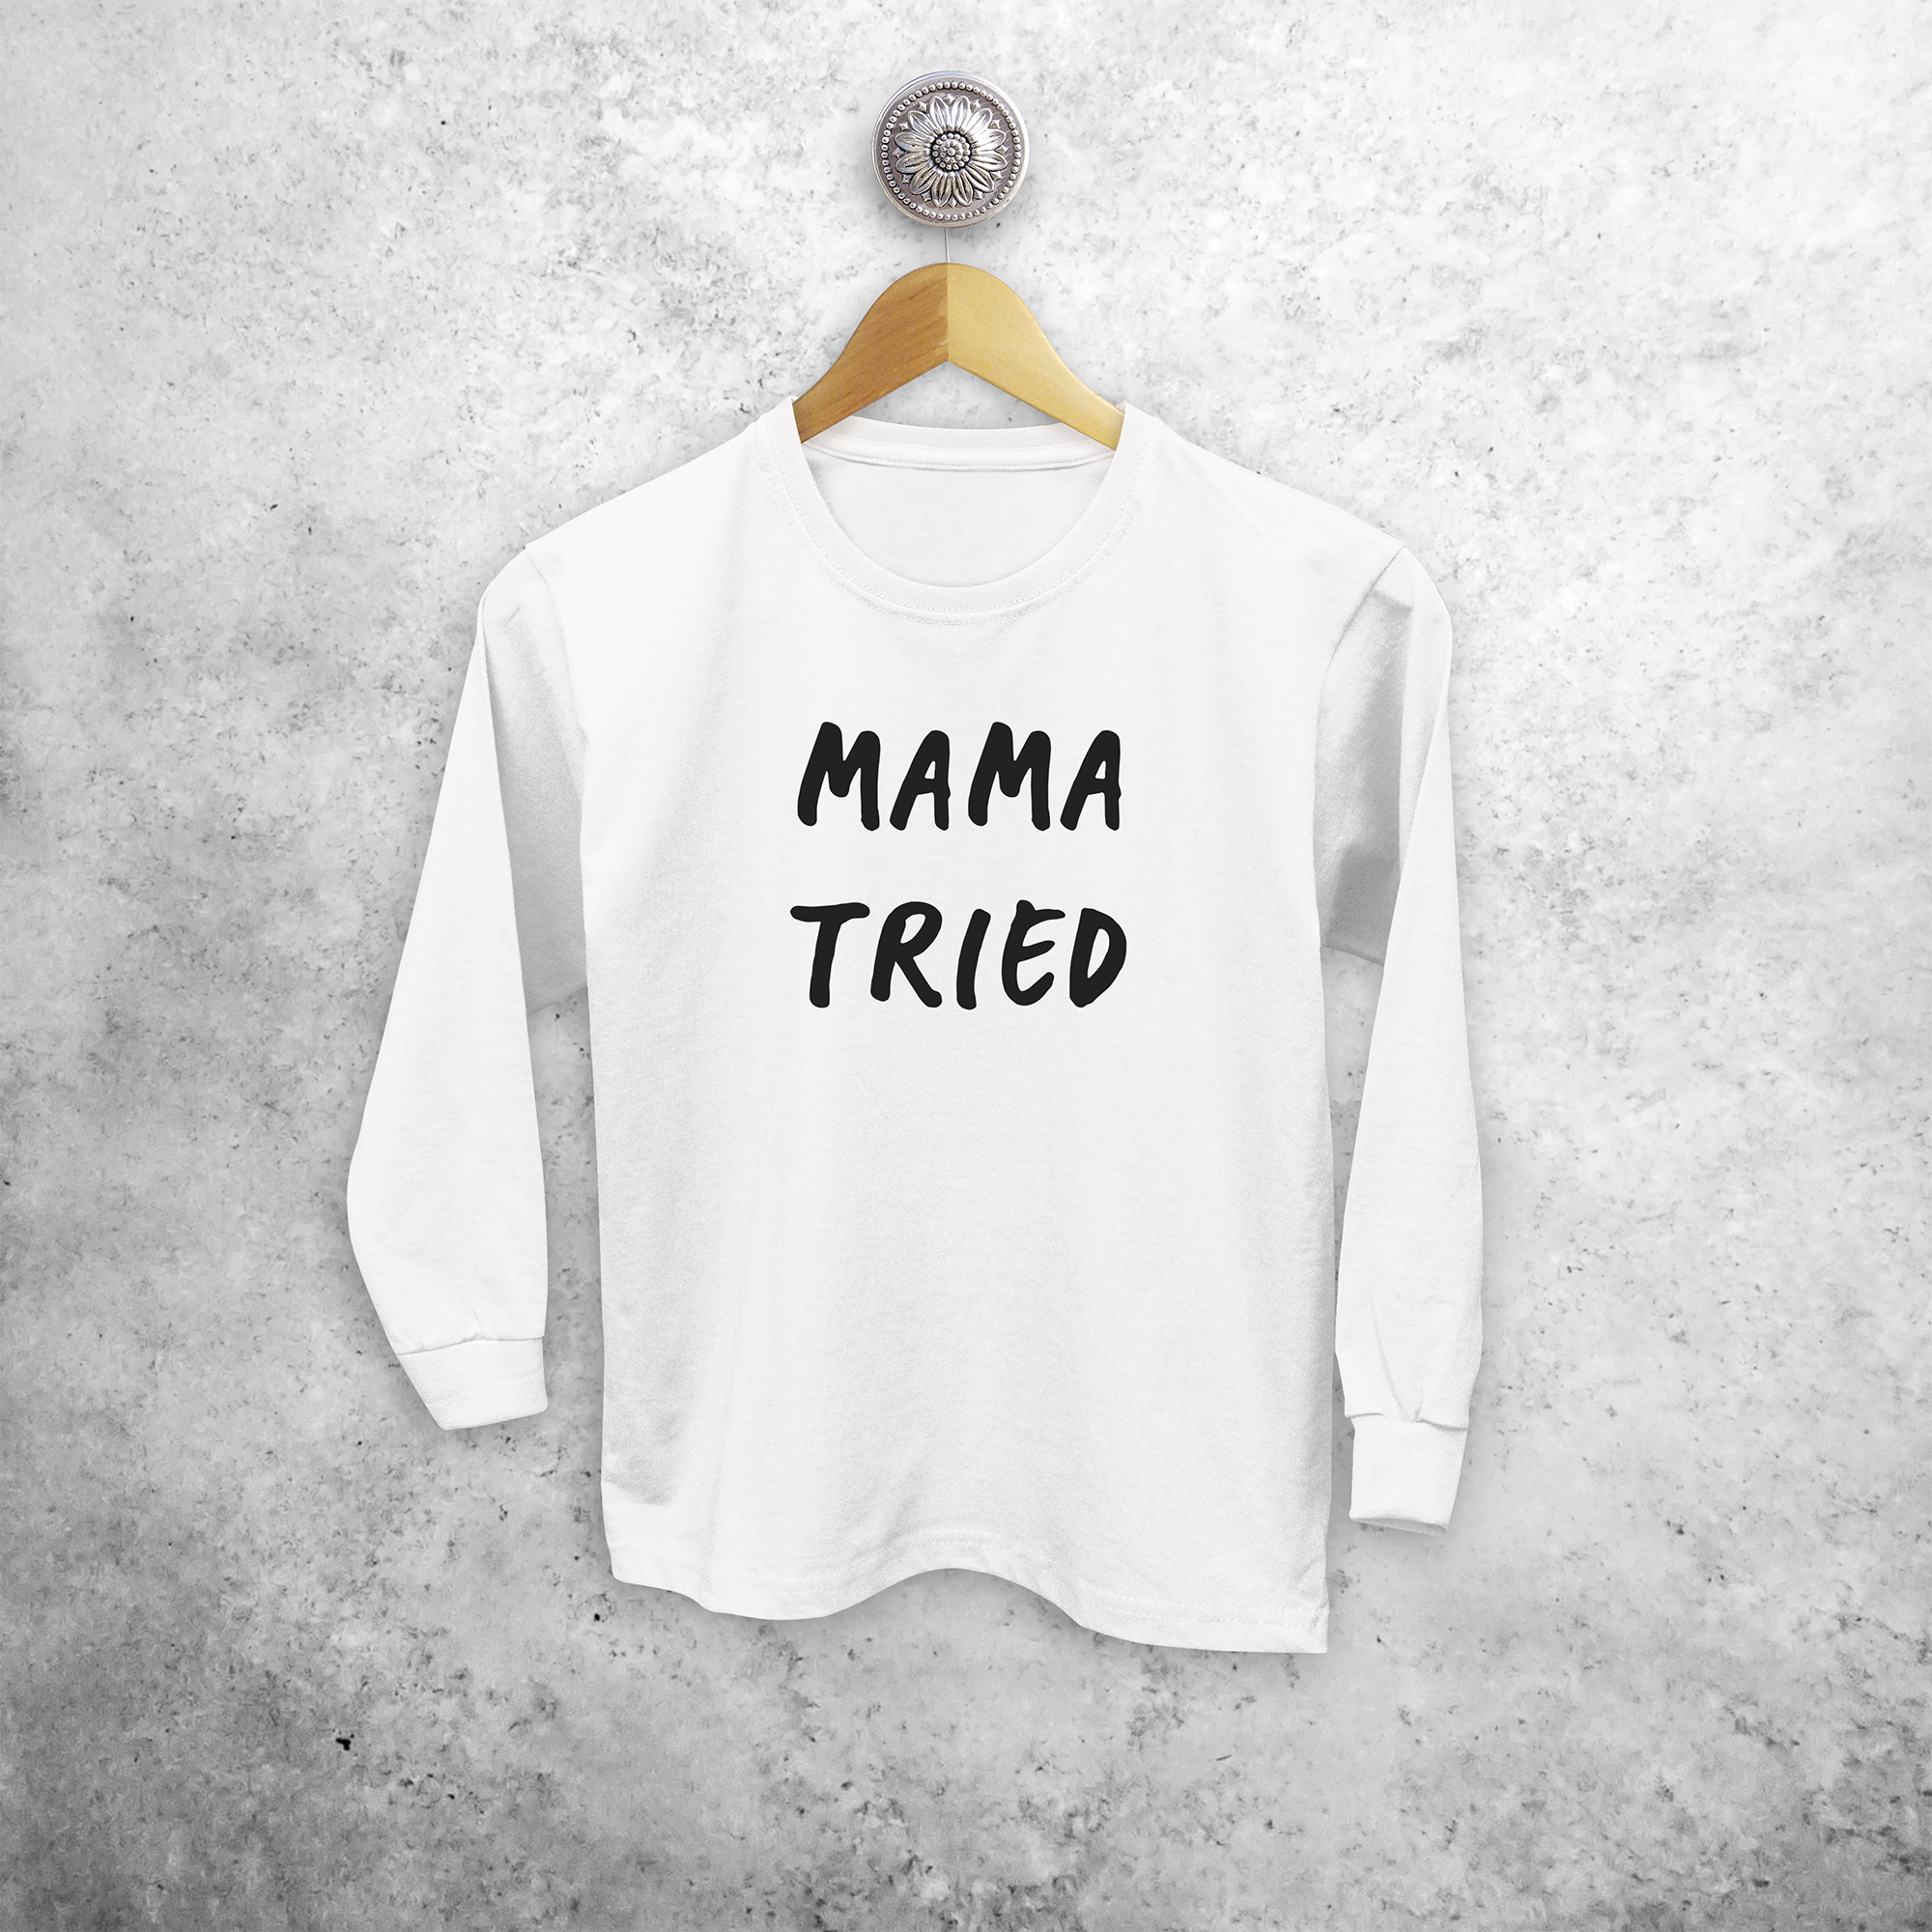 'Mama tried' kids longsleeve shirt